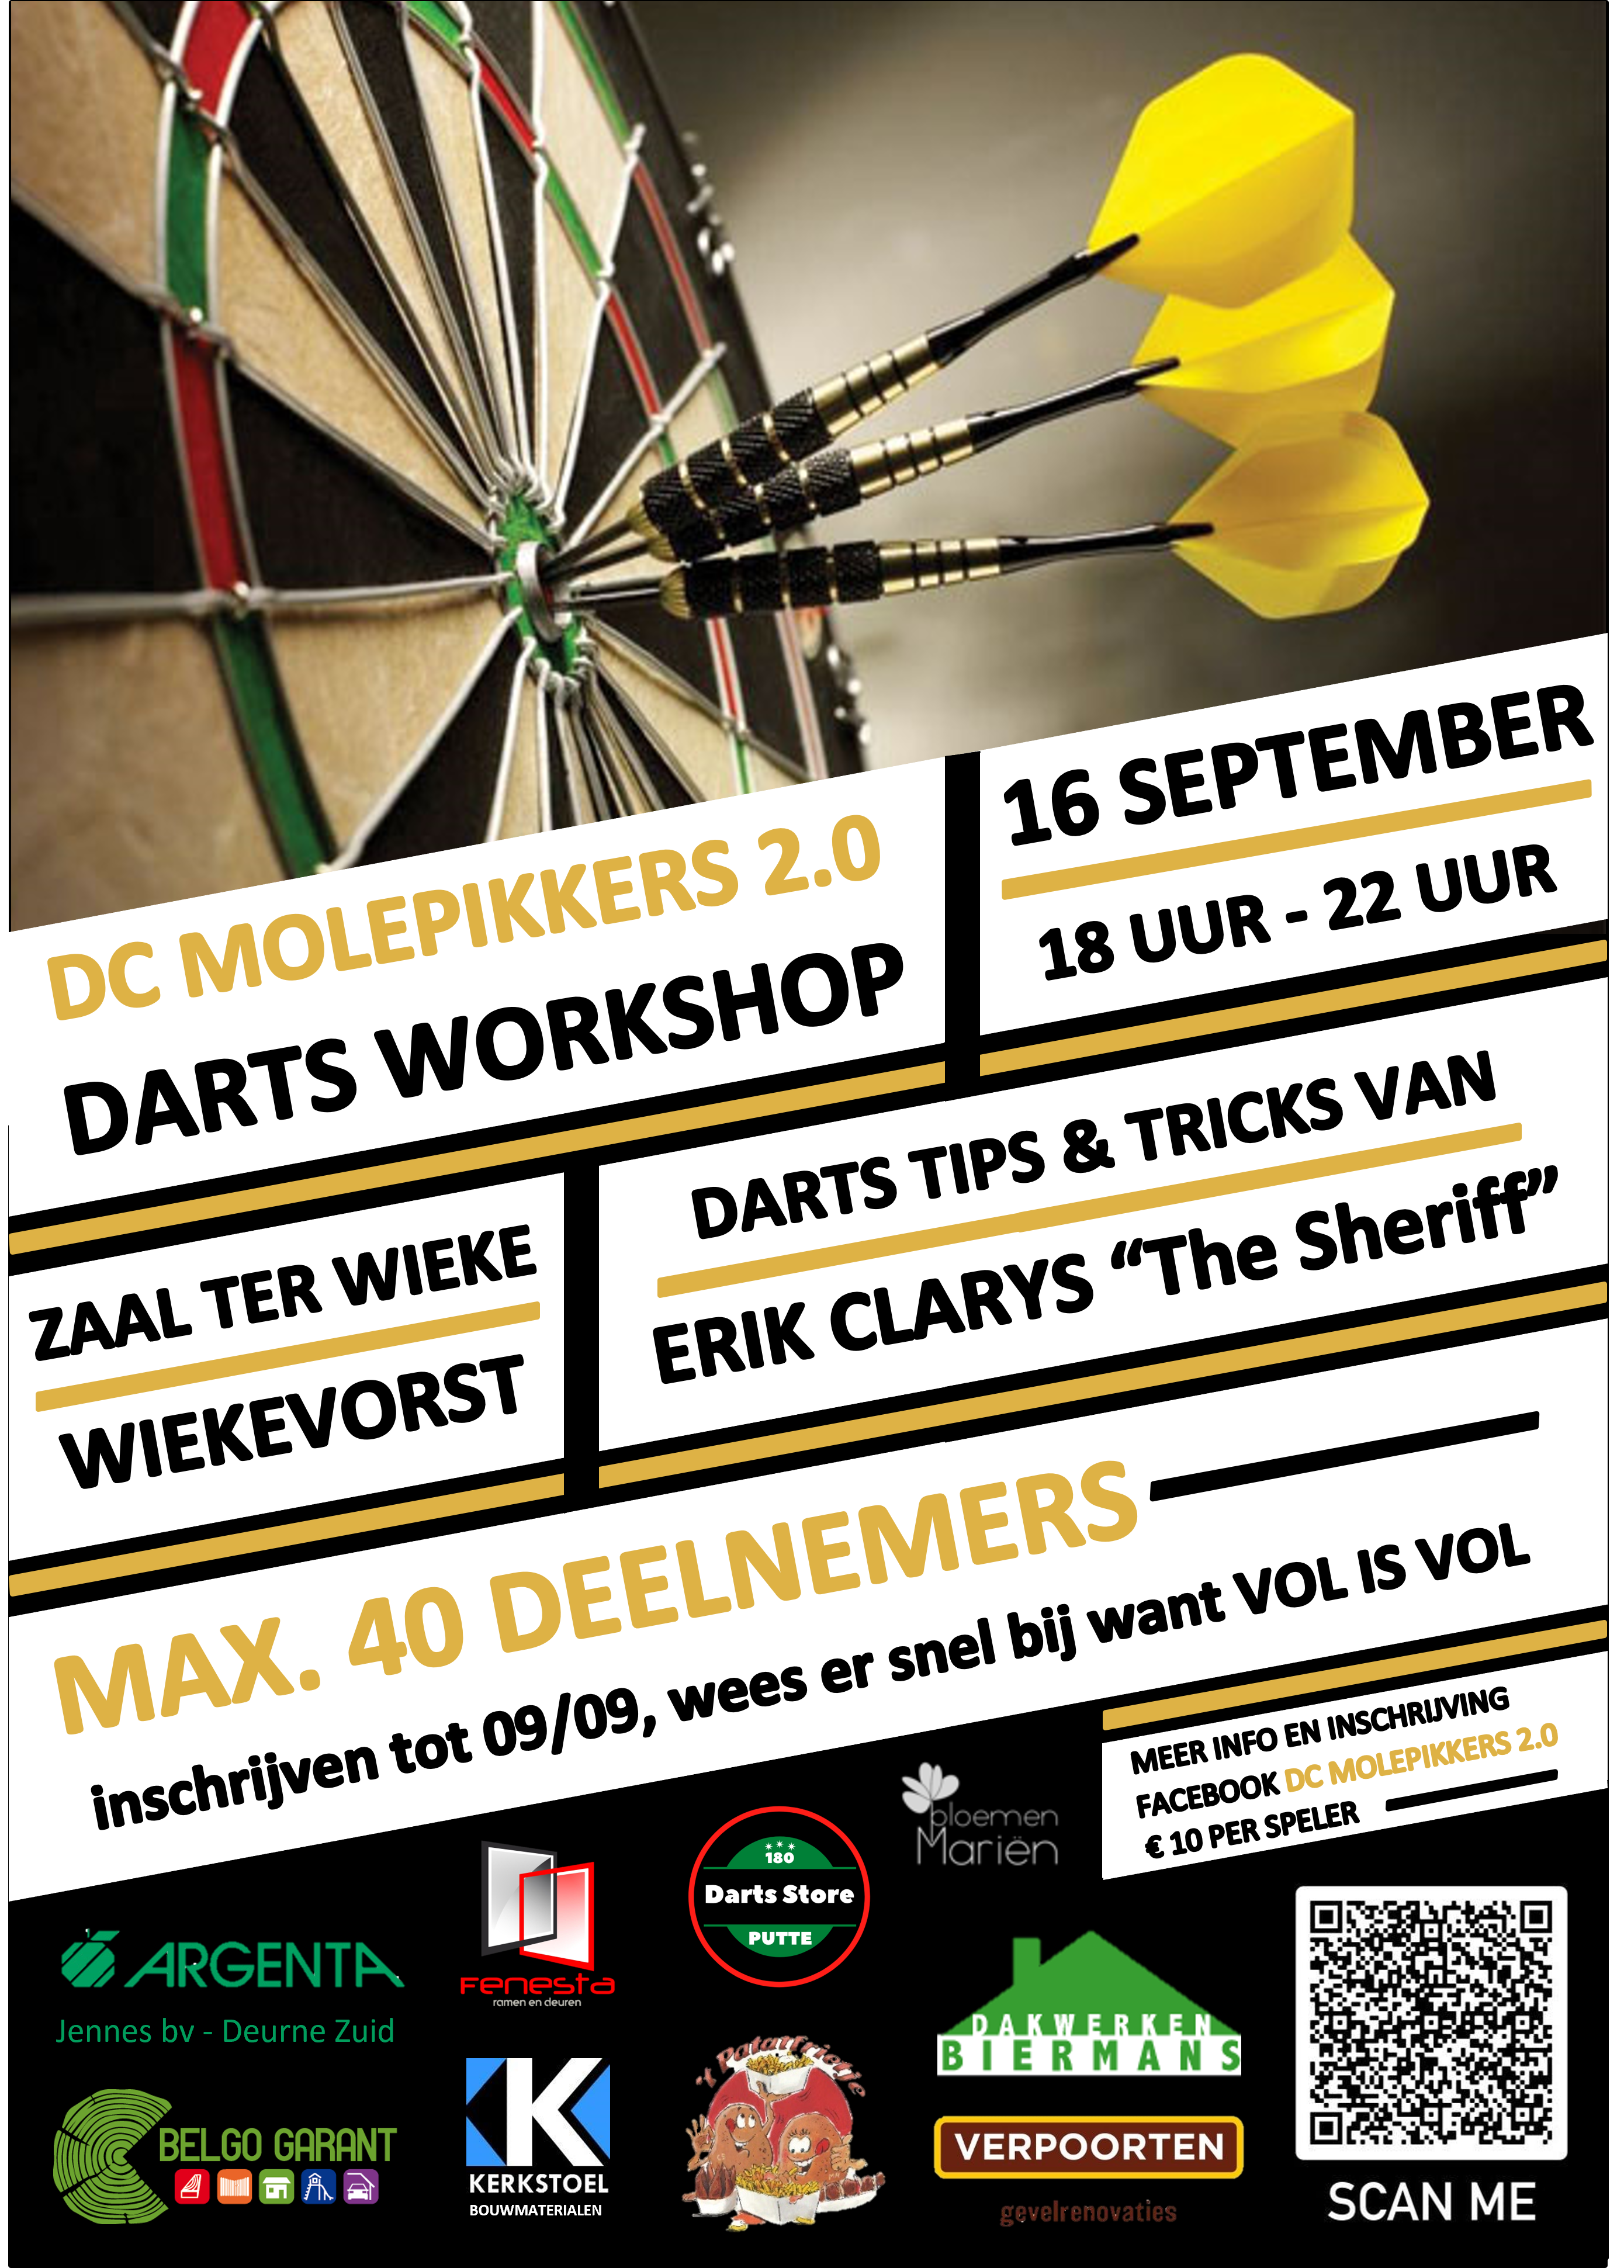 Darts Workshop Erik Clarys - DC Molepikkers 2.0